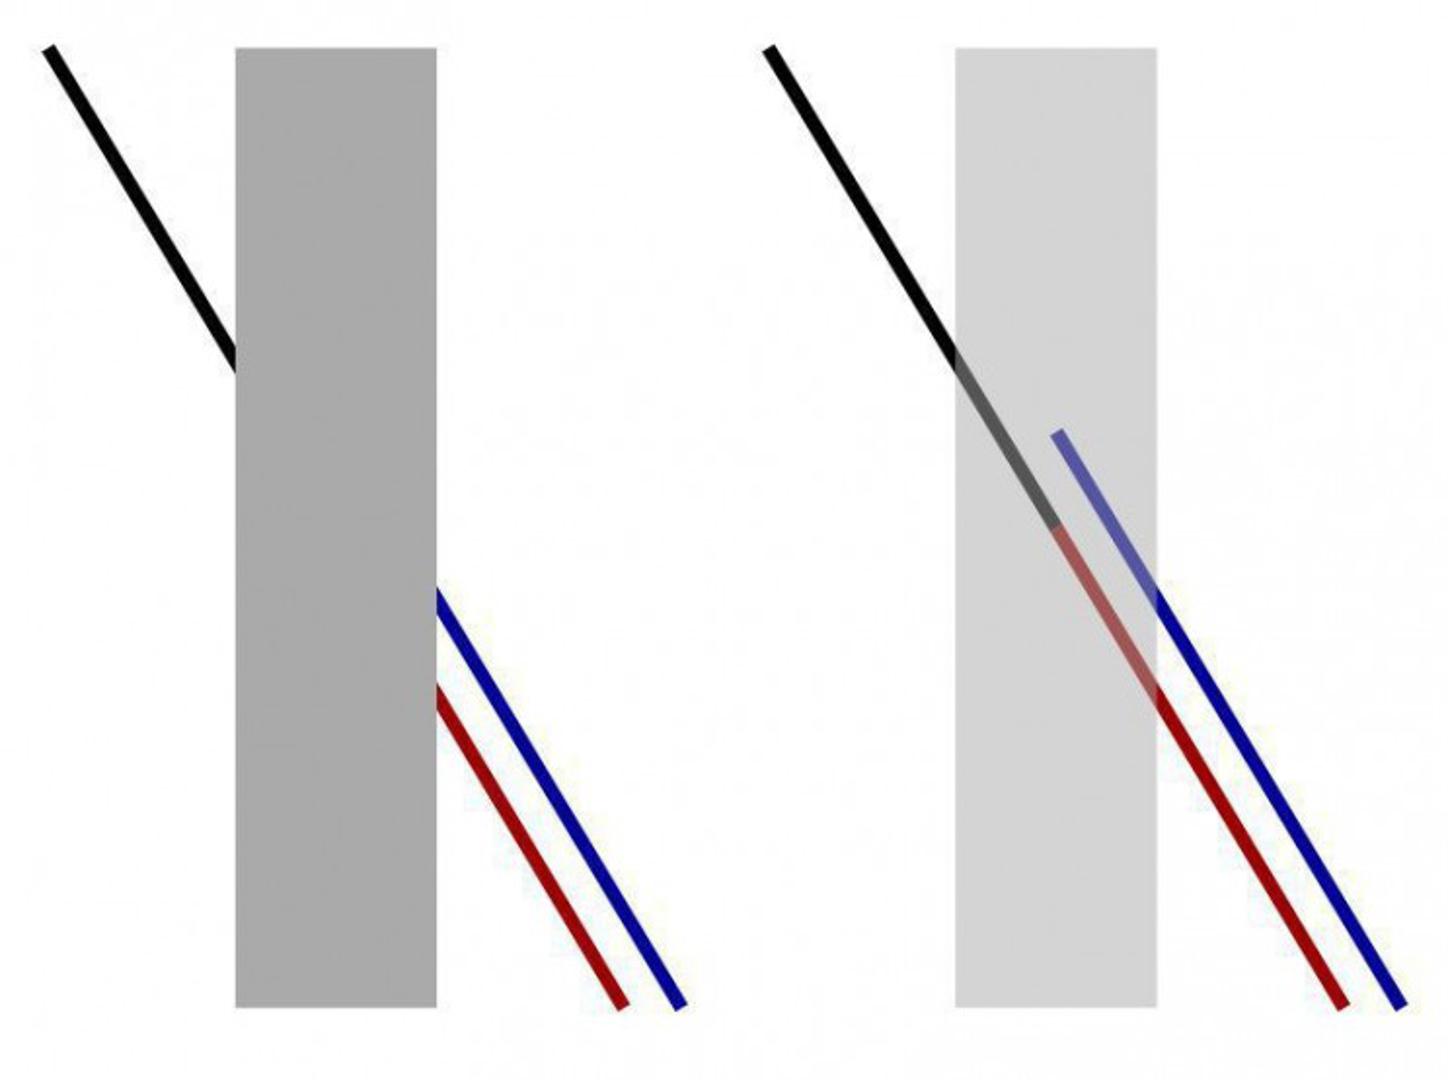 Poggendorffova iluzija je jedan od onih trikova optičke iluzije koji će vas natjerati da pogledate dva puta. Ako pogledate sliku s lijeve strane, činit će vam se da je crna crta nastavak donje plave crte, iako u stvarnosti nije!